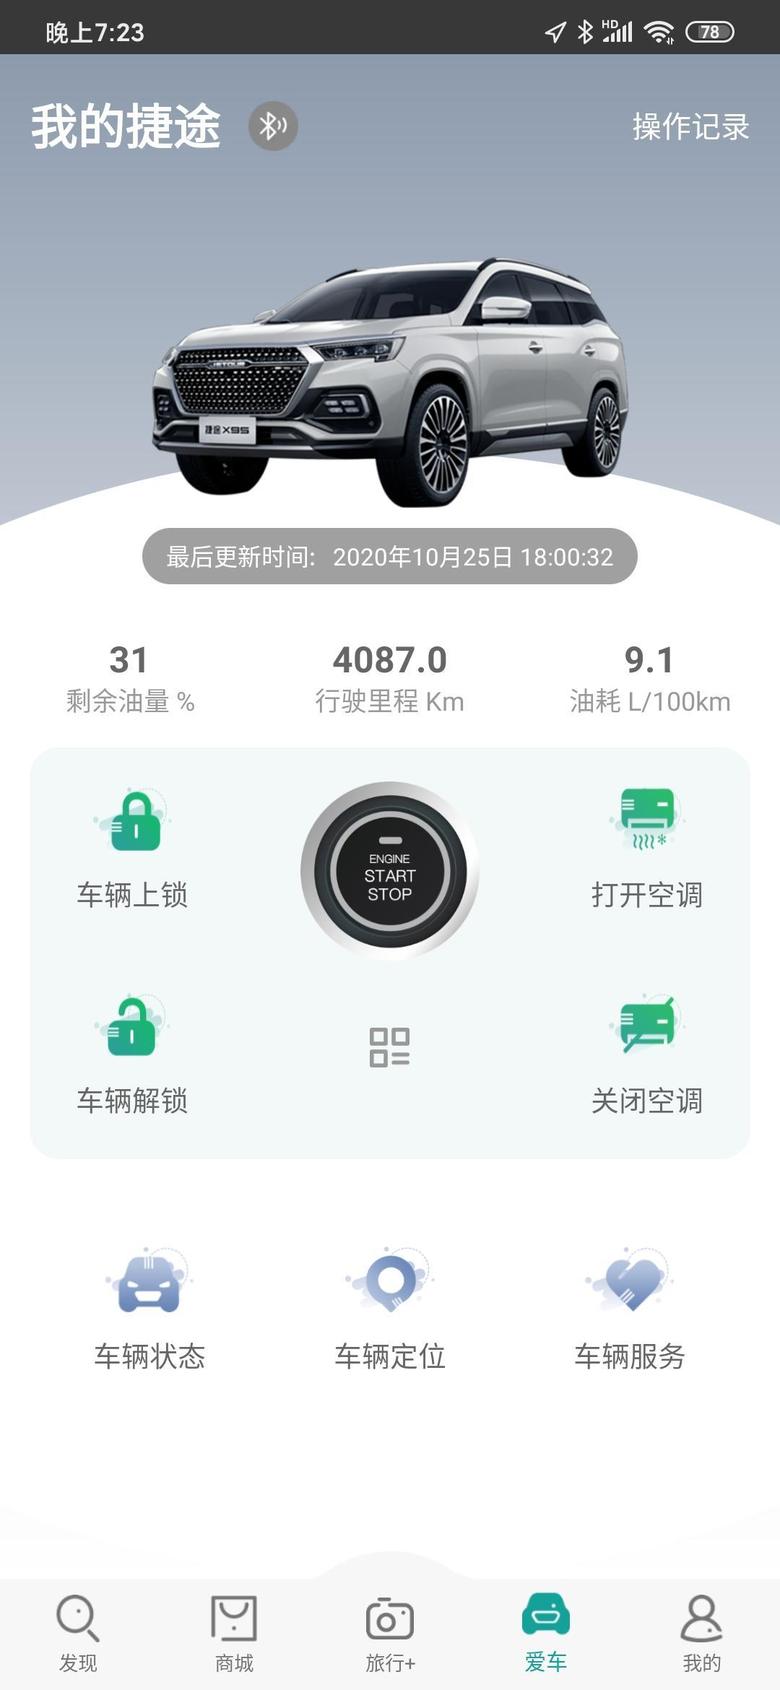 捷途x95 北京天津往返就没低过9.2。进了京上四环到表9.1了